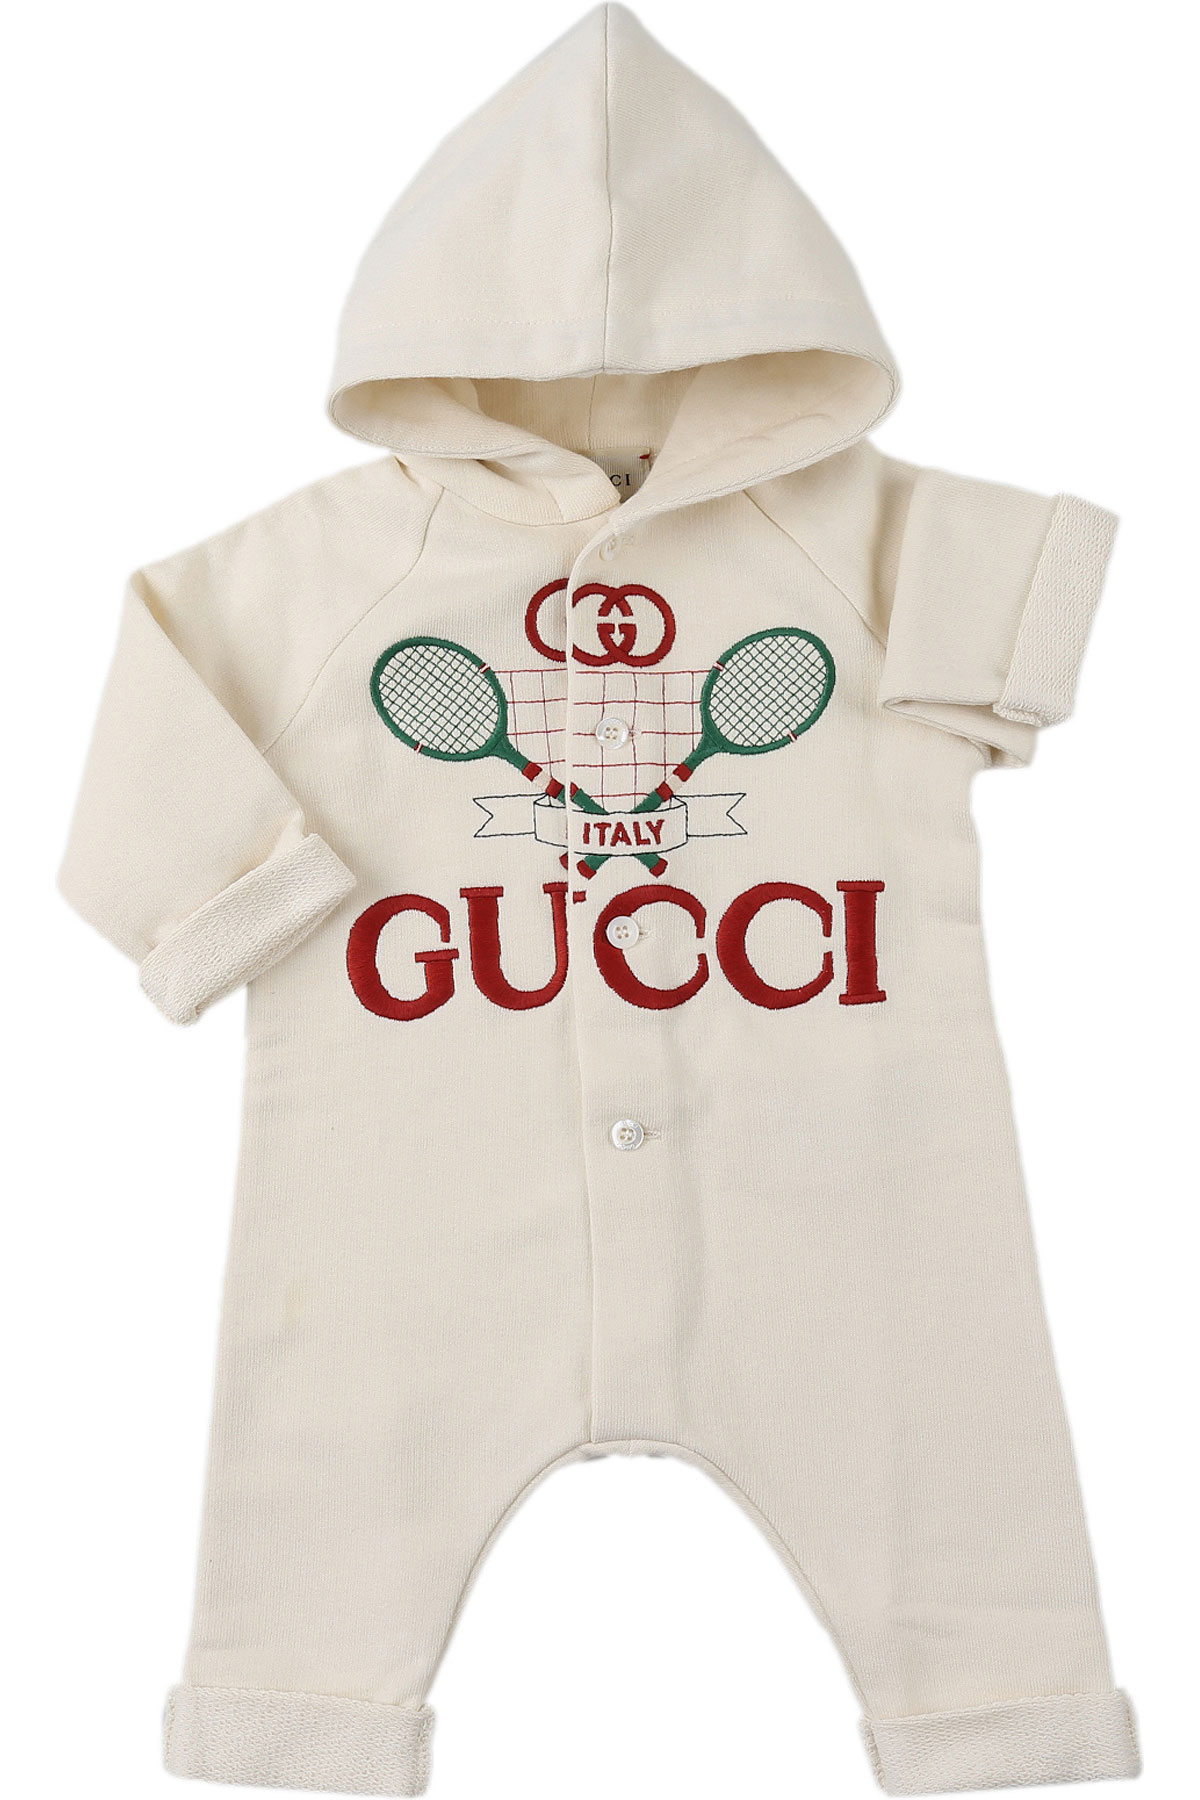 Gucci Baby Bodys & Strampelanzug für Jungen Günstig im Sale, Weiss, Baumwolle, 2017, 12 M 1M 3M 6M 6M 9M